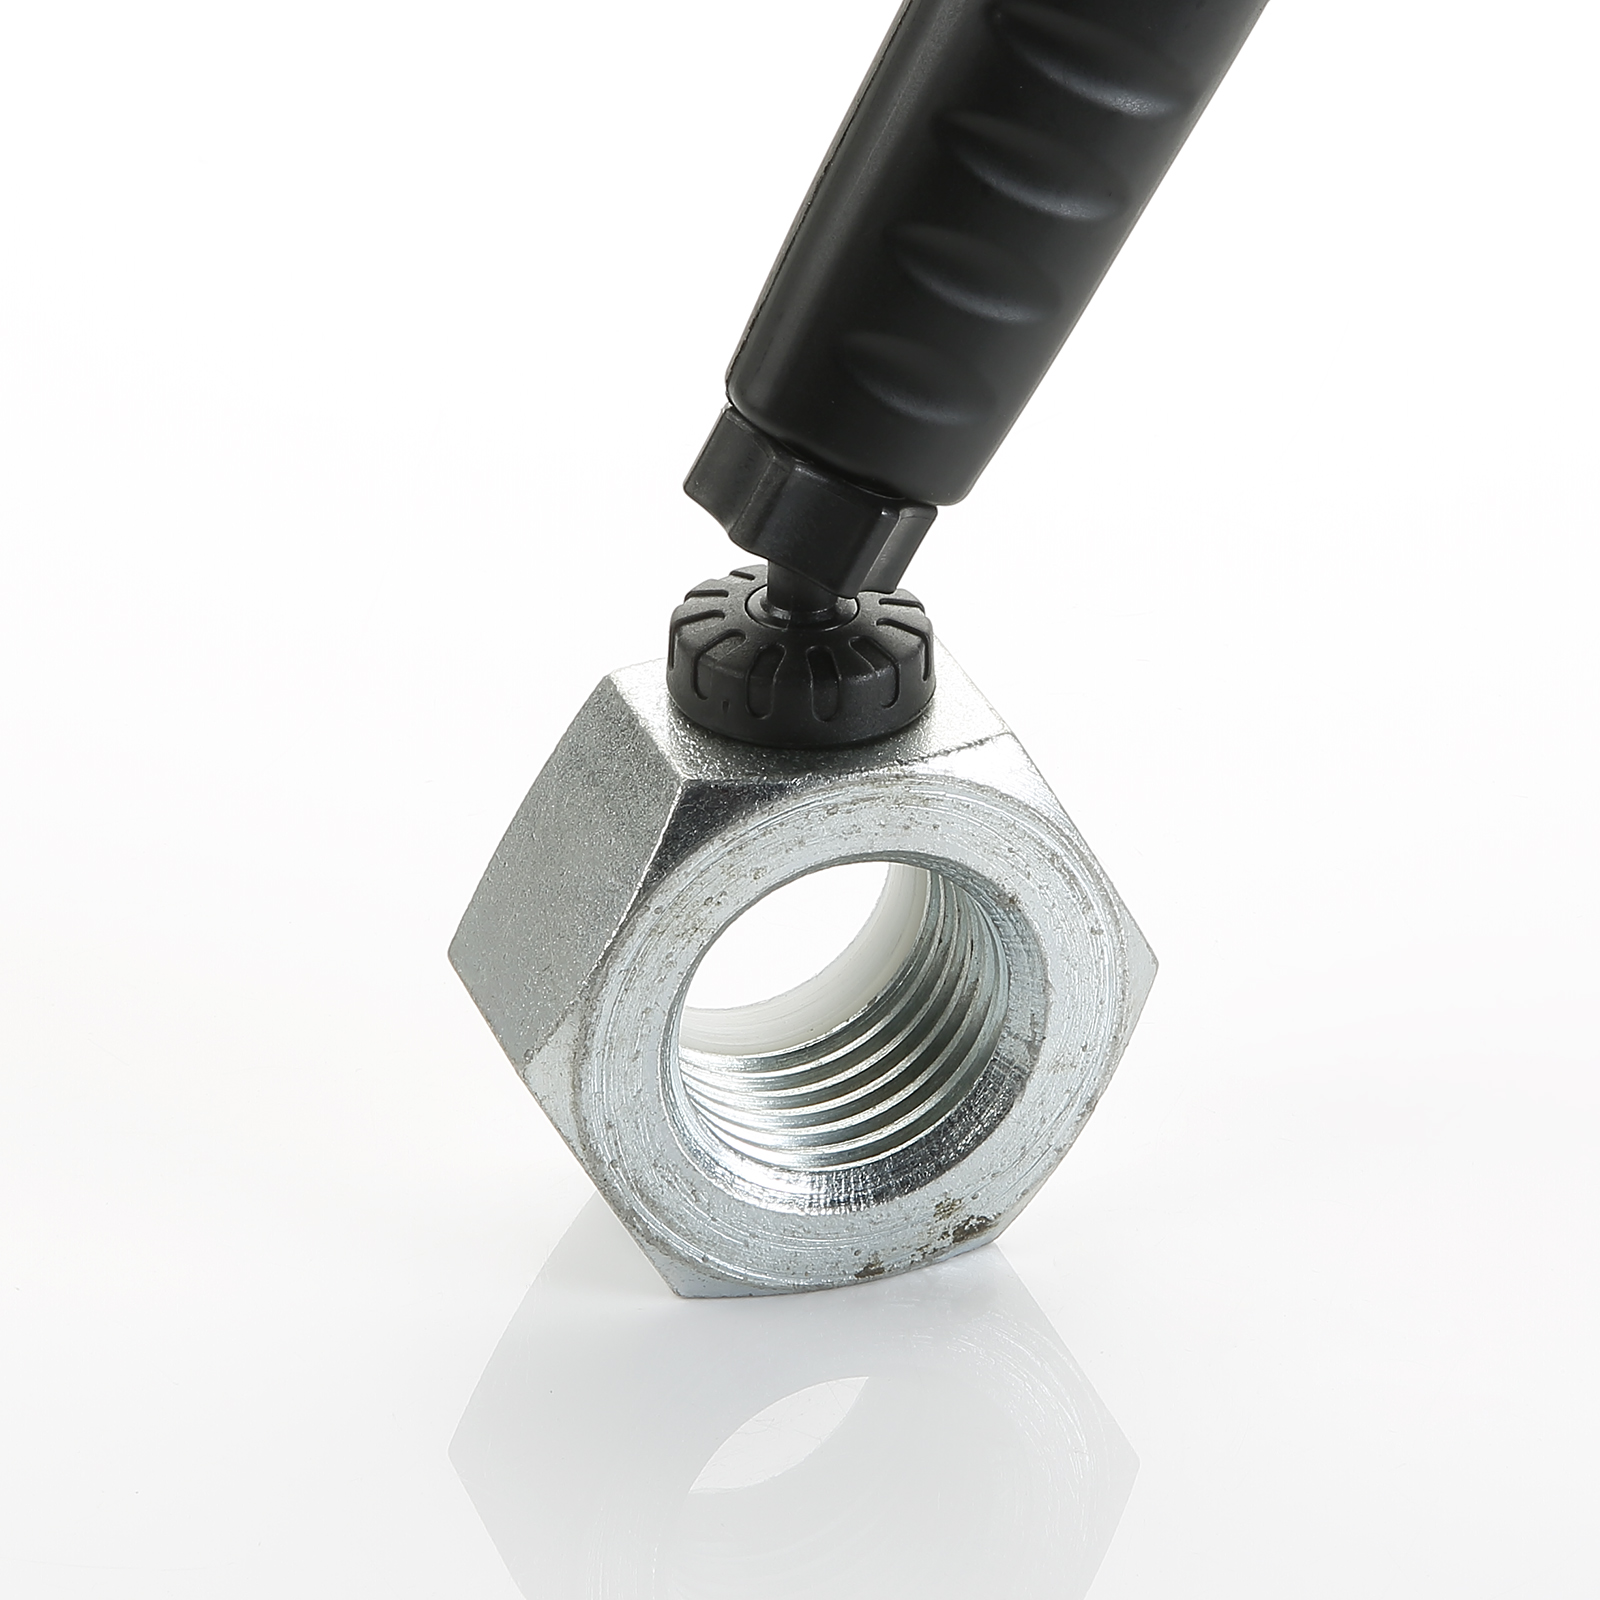 Lampe tubulaire rechargeable 60 LED magnétique ALYCO, Produits